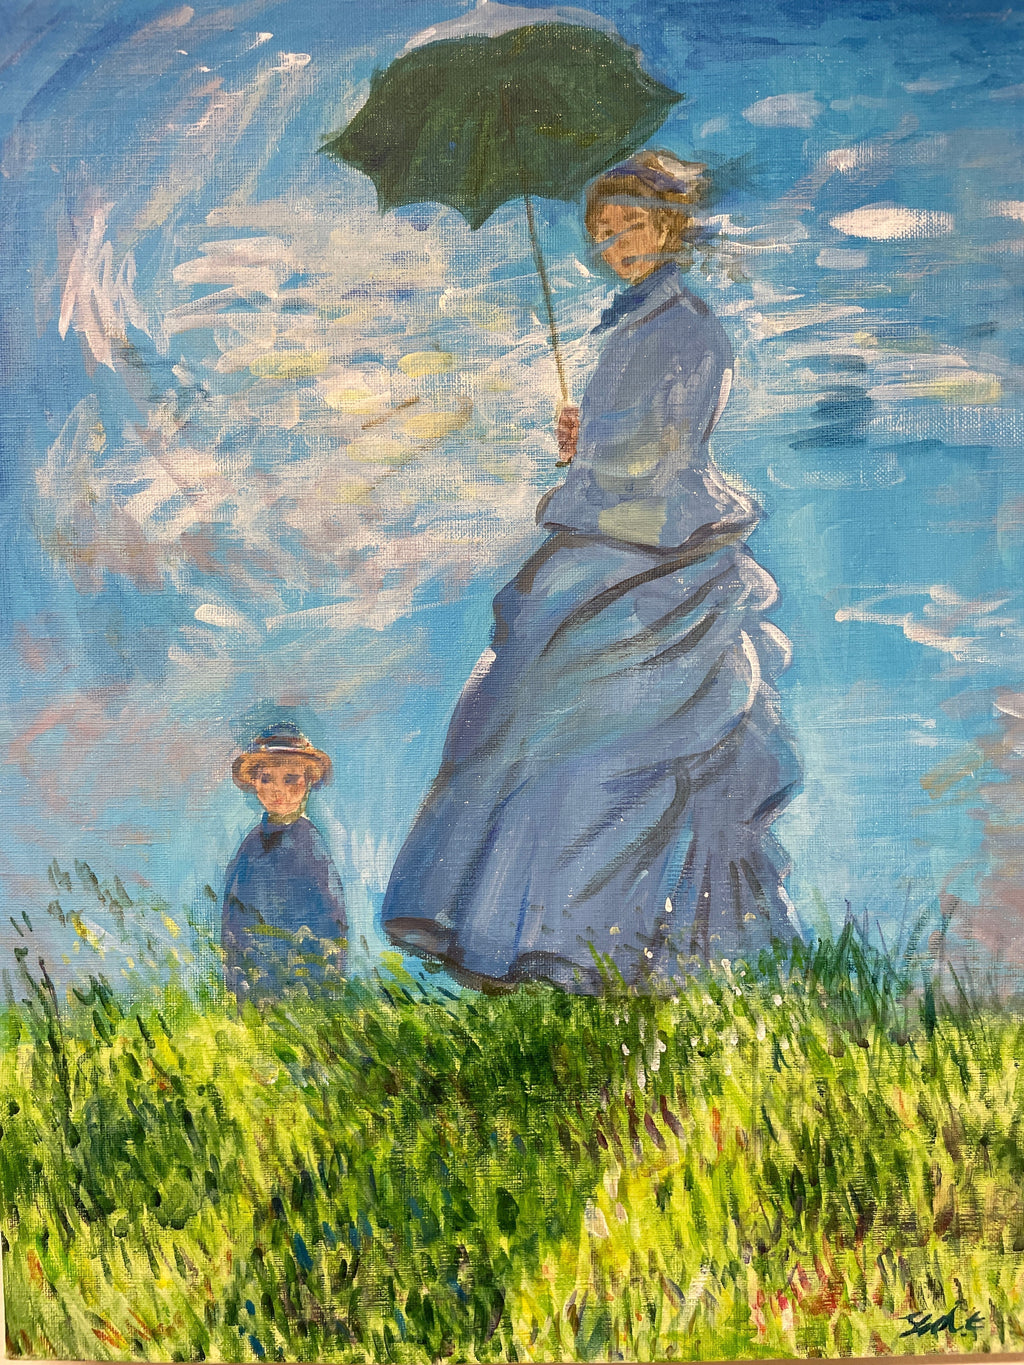 【上野/根津】3月22日 (金) 19:00-22:00 | クロード・モネ | 散歩、日傘をさす女性 (Woman with a Parasol by Claude Monet at Ueno/Nezu)